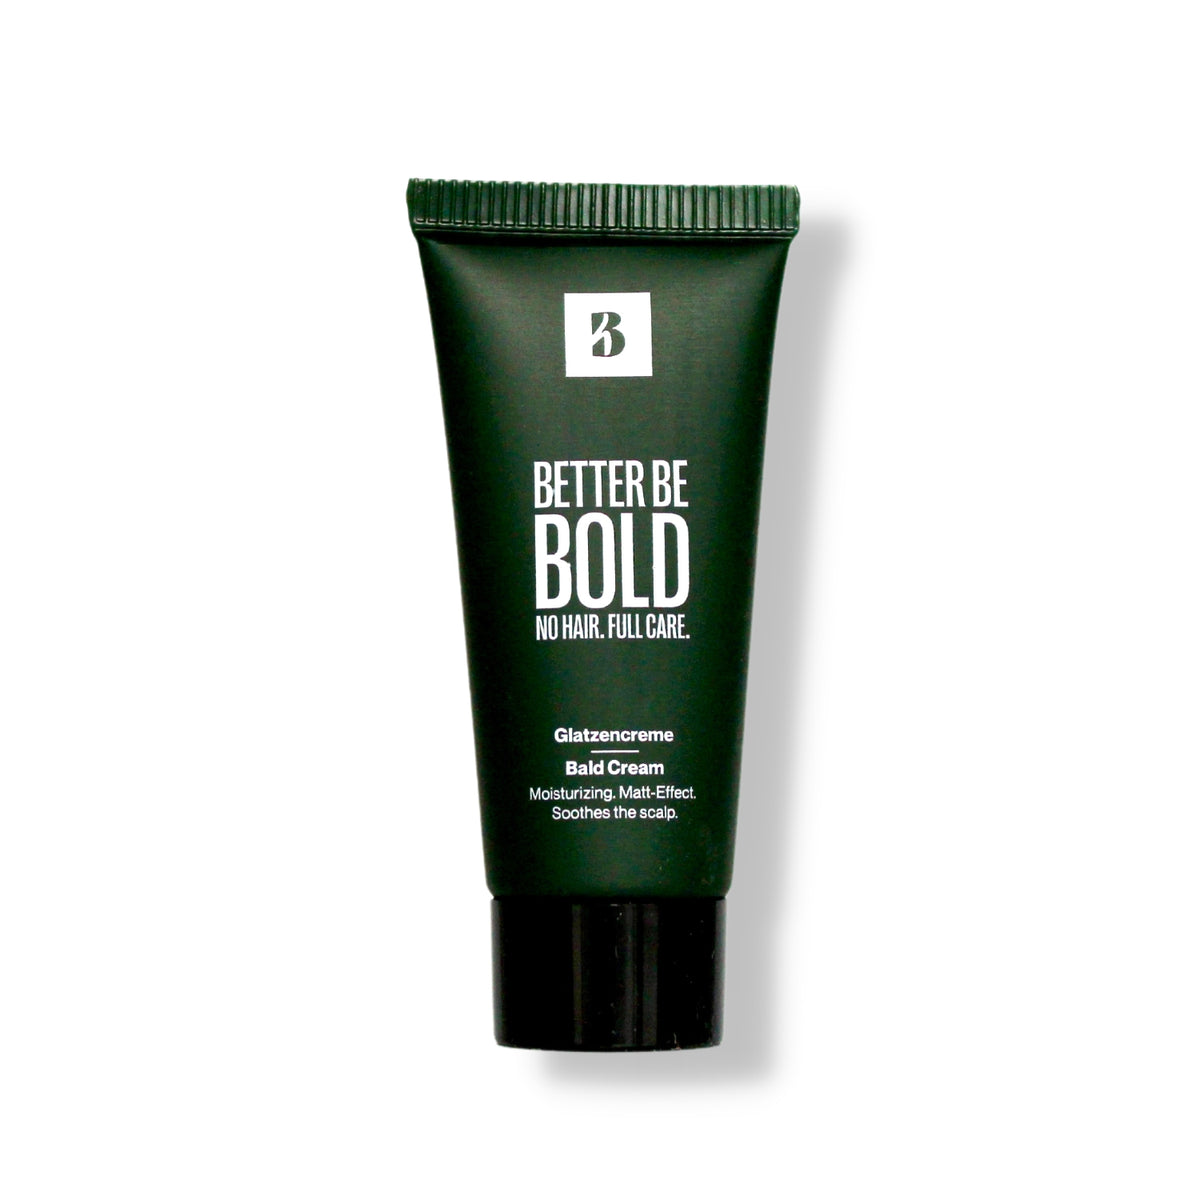 Better be Bold - Bald Cream - Skallakrem